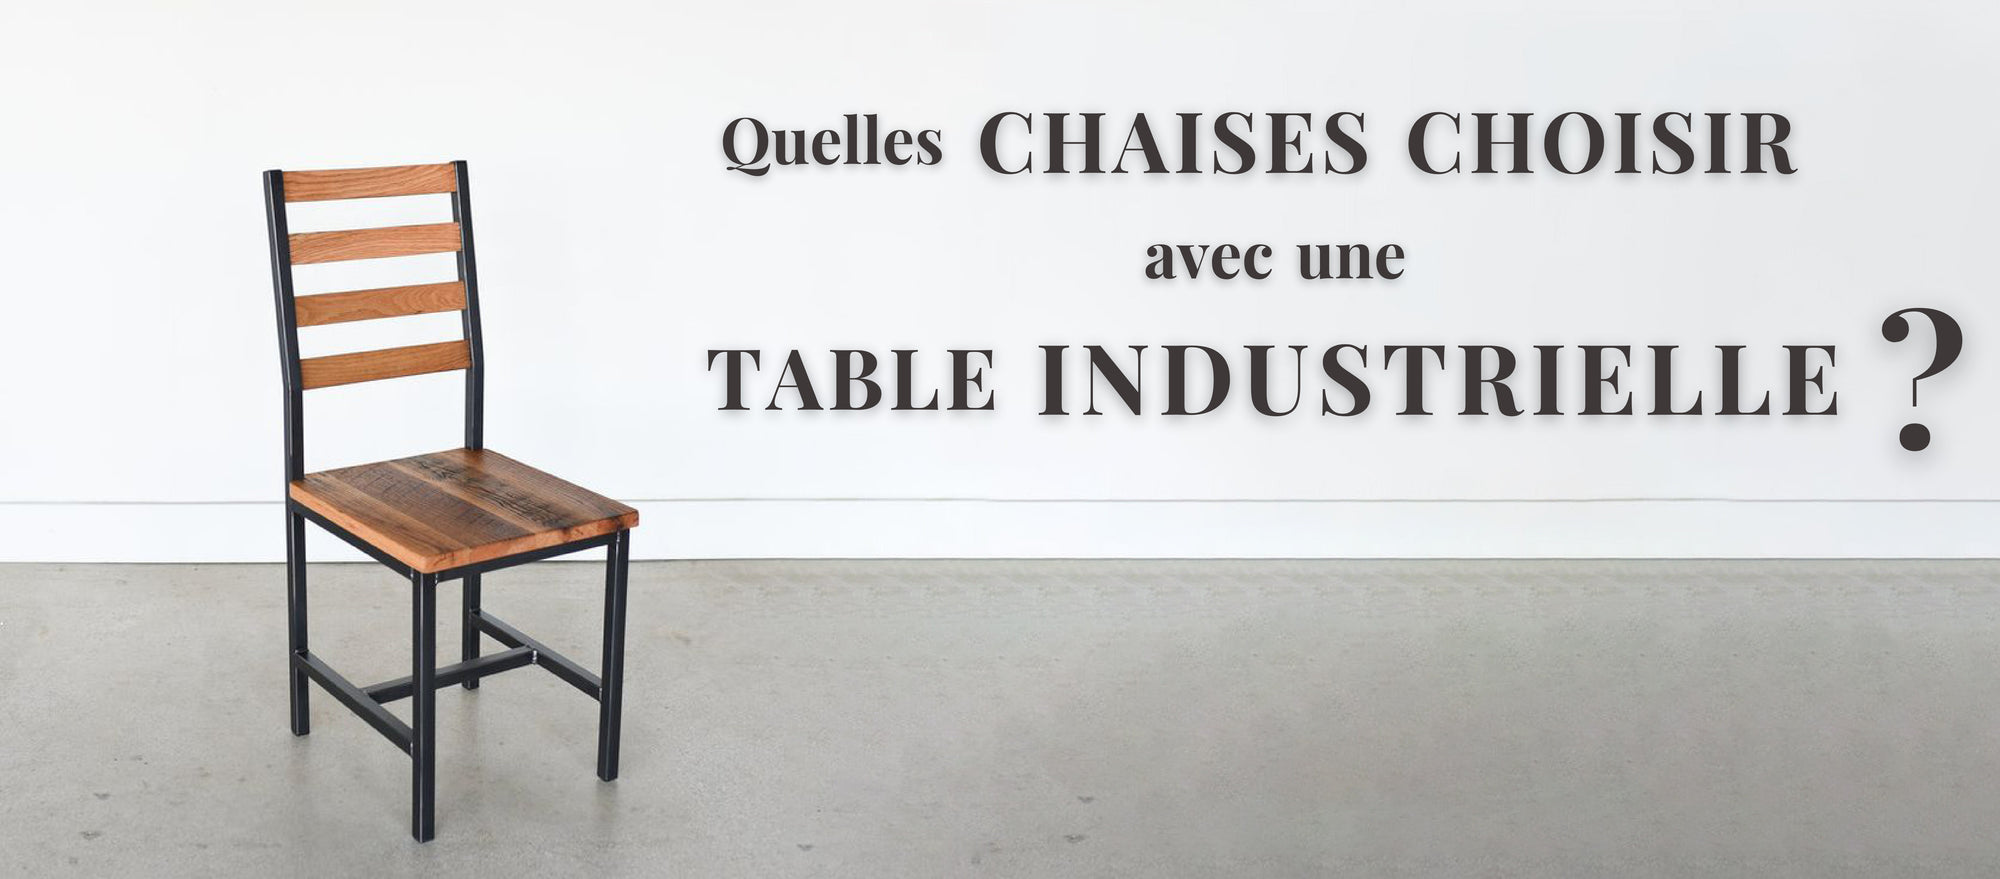 Quelles Chaises choisir avec une Table Industrielle ?